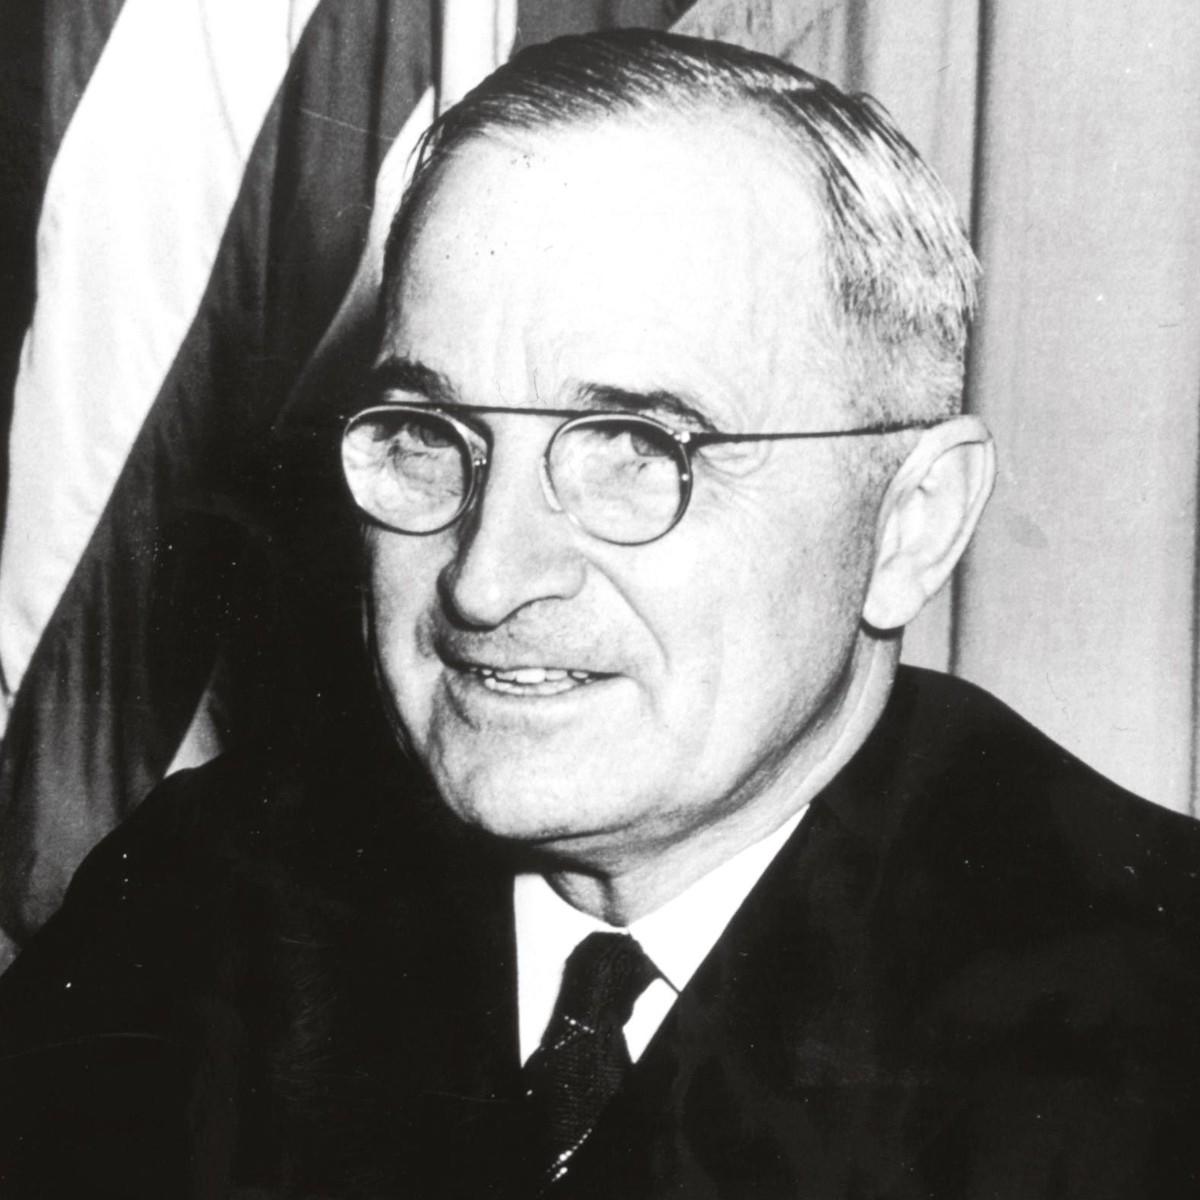 Harry S. Truman (1884-1972)